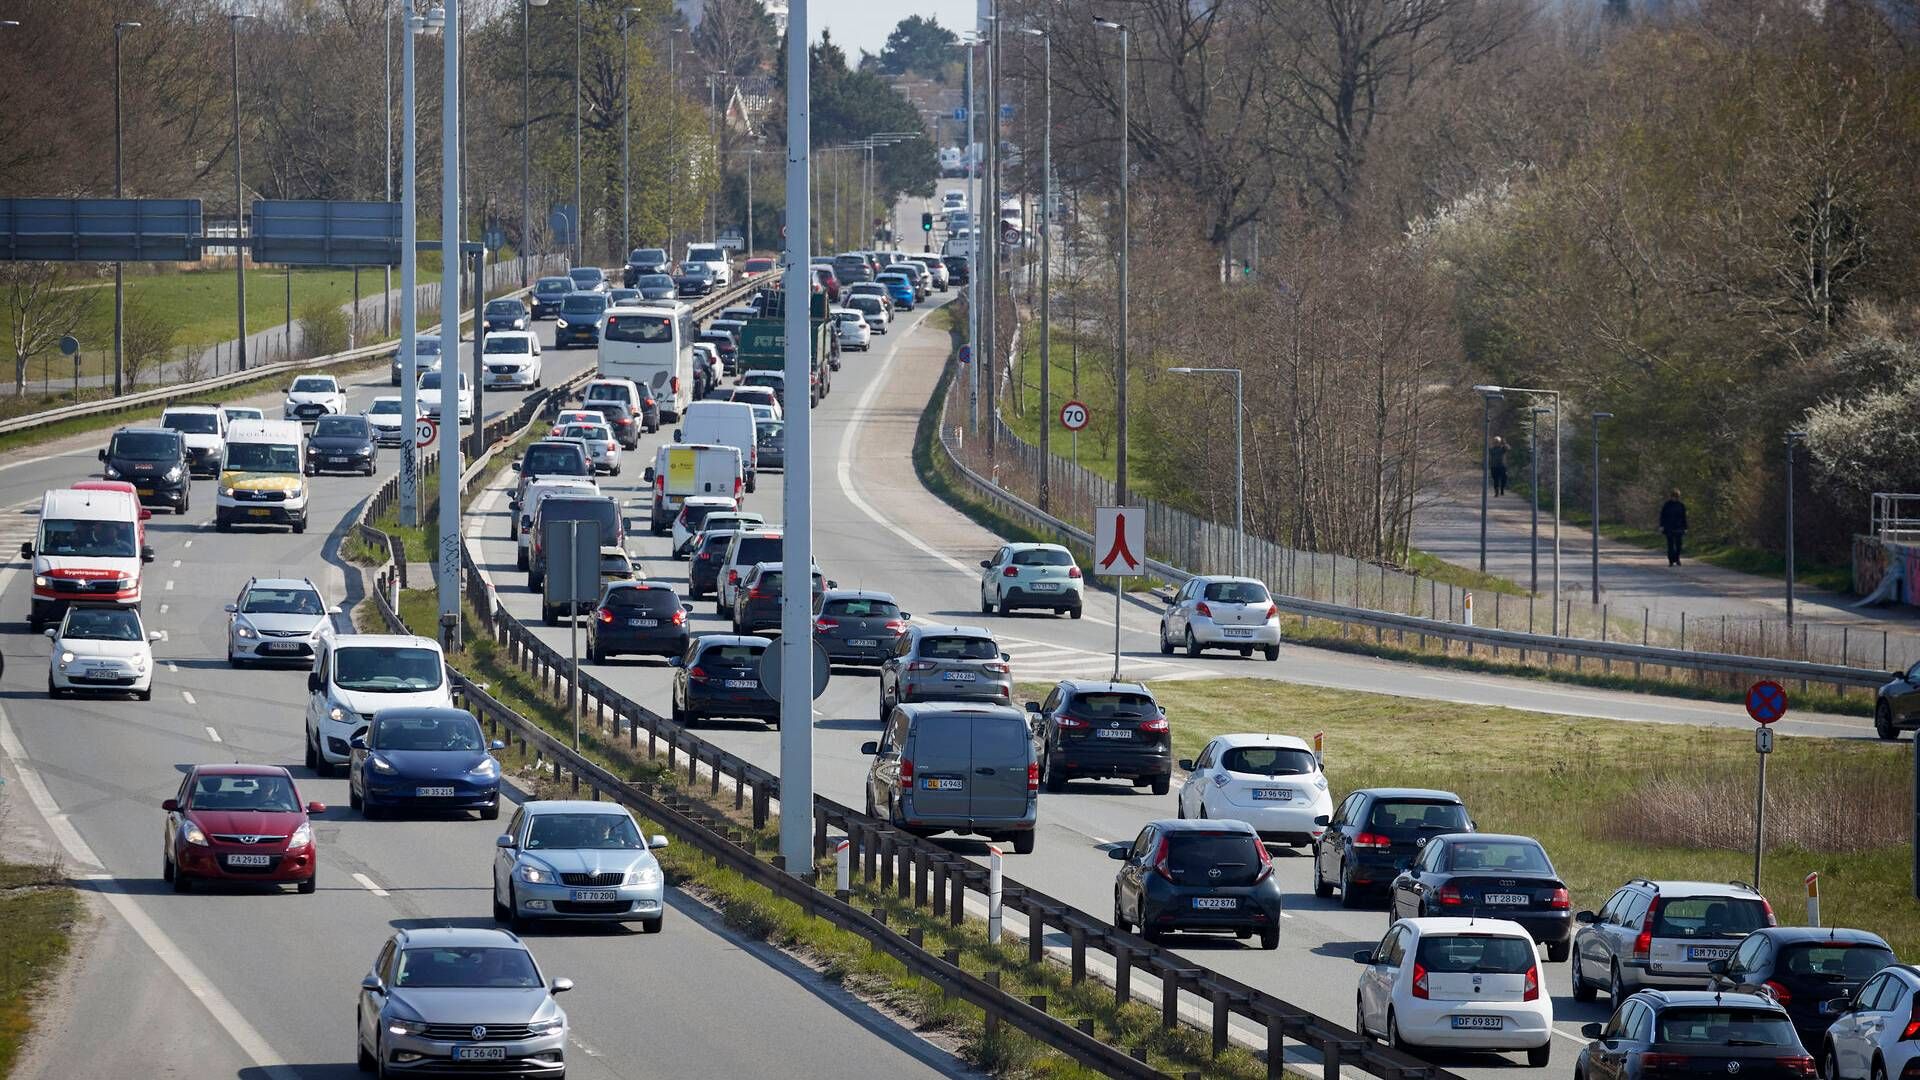 Det er blandt andet på grund af problemer med trængsel på vejen, at S-transportordfører Thomas Jensen ser positivt på en mulig mobilitetsplan. | Foto: Jens Dresling/Ritzau Scanpix